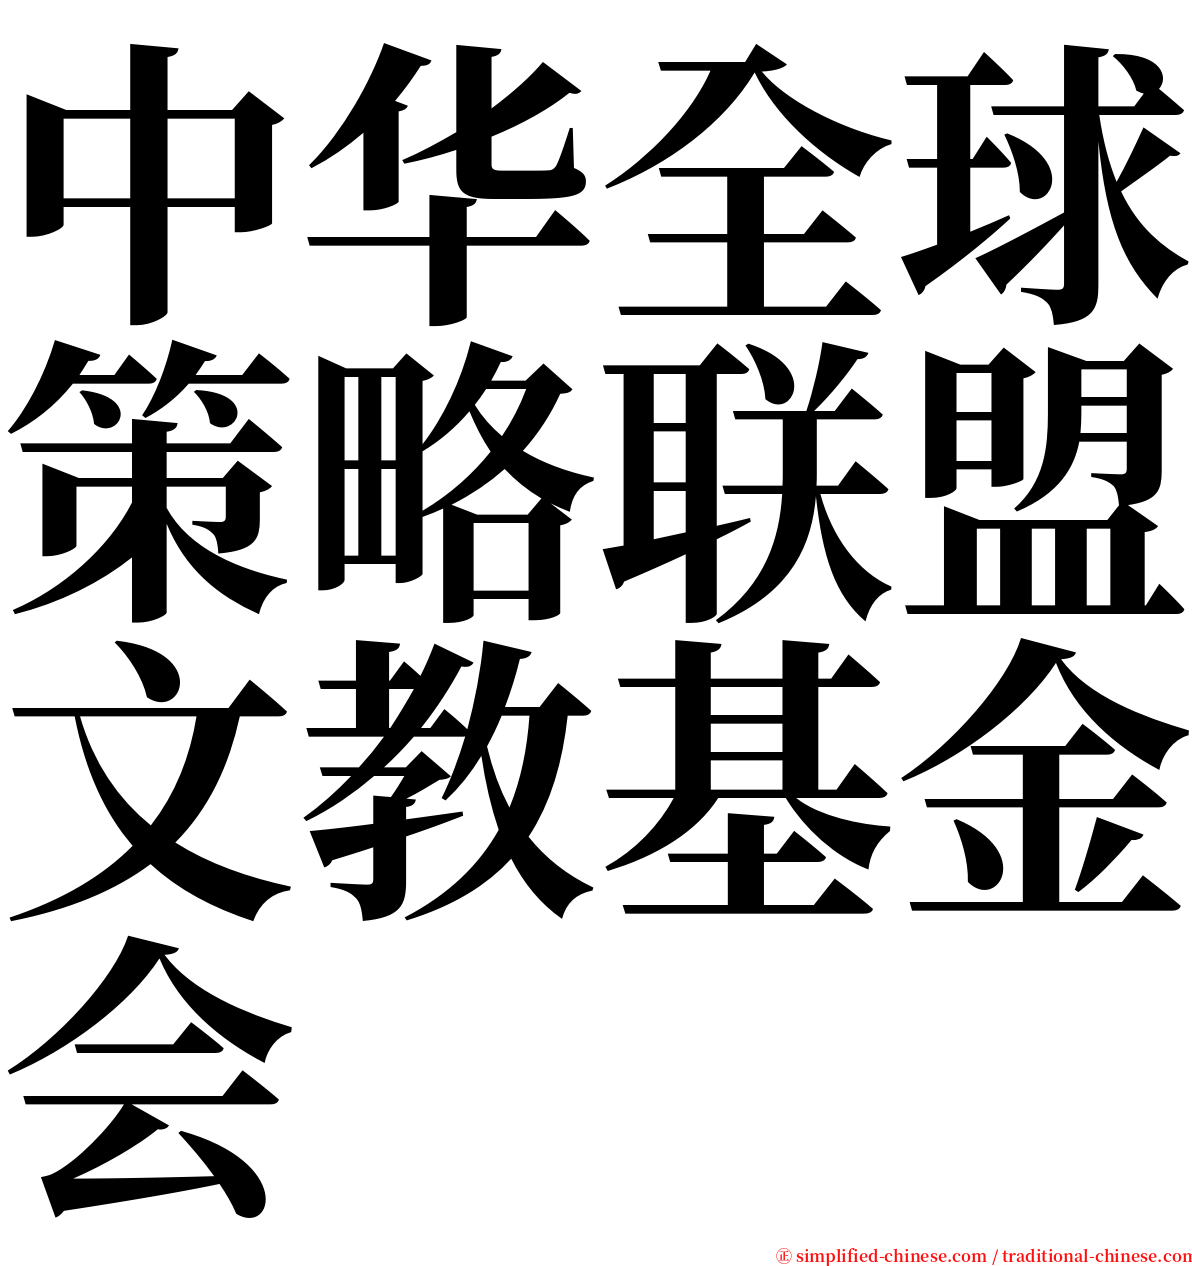 中华全球策略联盟文教基金会 serif font